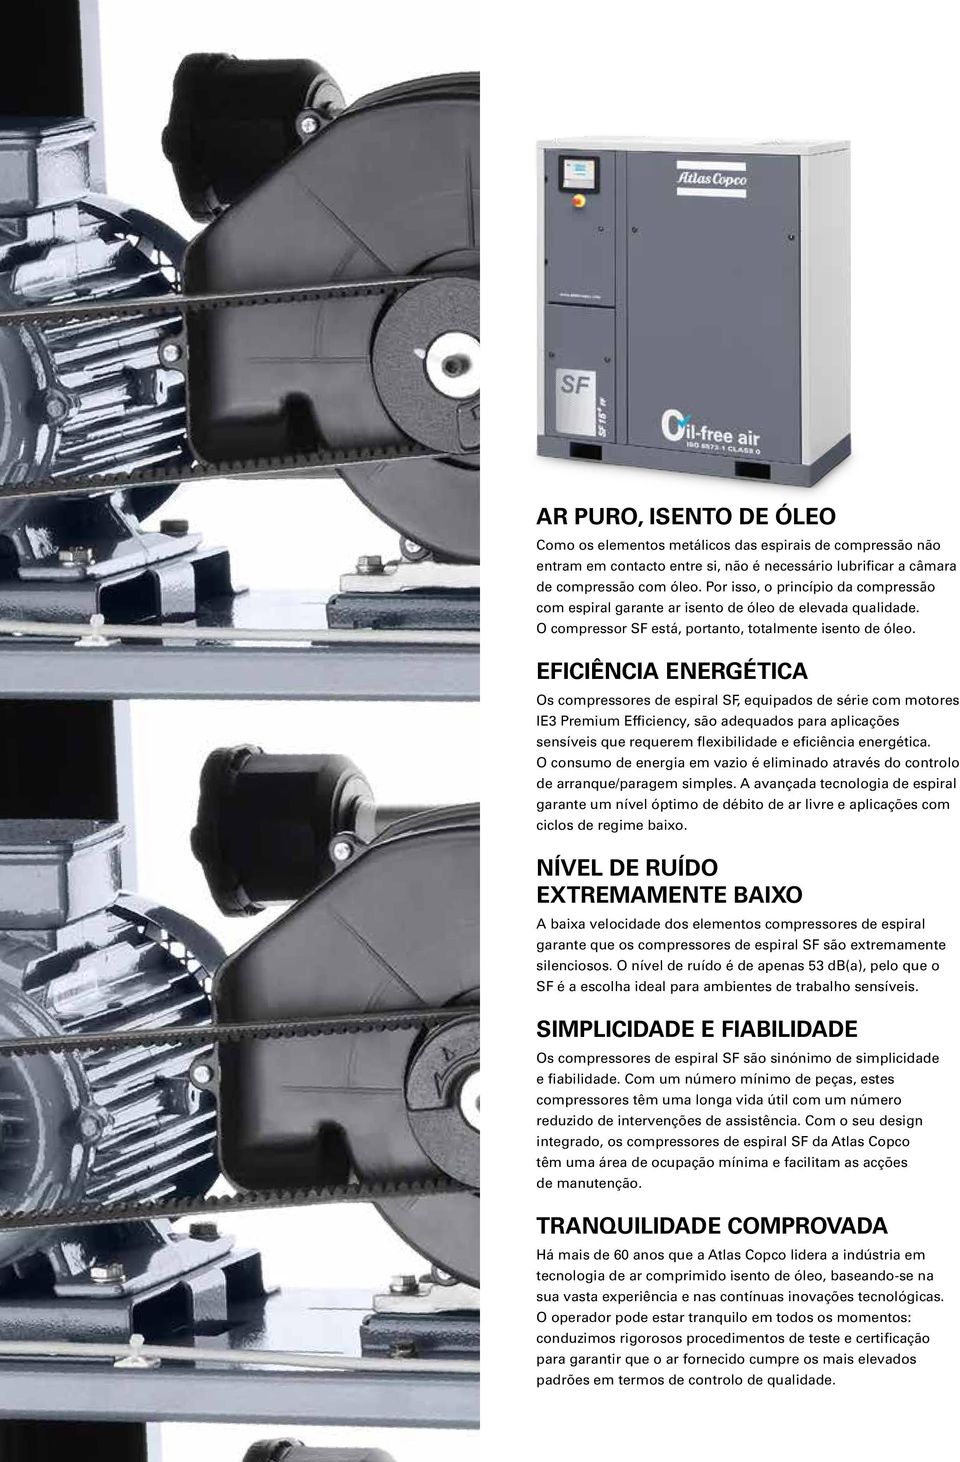 EFICIÊNCIA ENERGÉTICA Os compressores de espiral SF, equipados de série com motores IE3 Premium Efficiency, são adequados para aplicações sensíveis que requerem flexibilidade e eficiência energética.